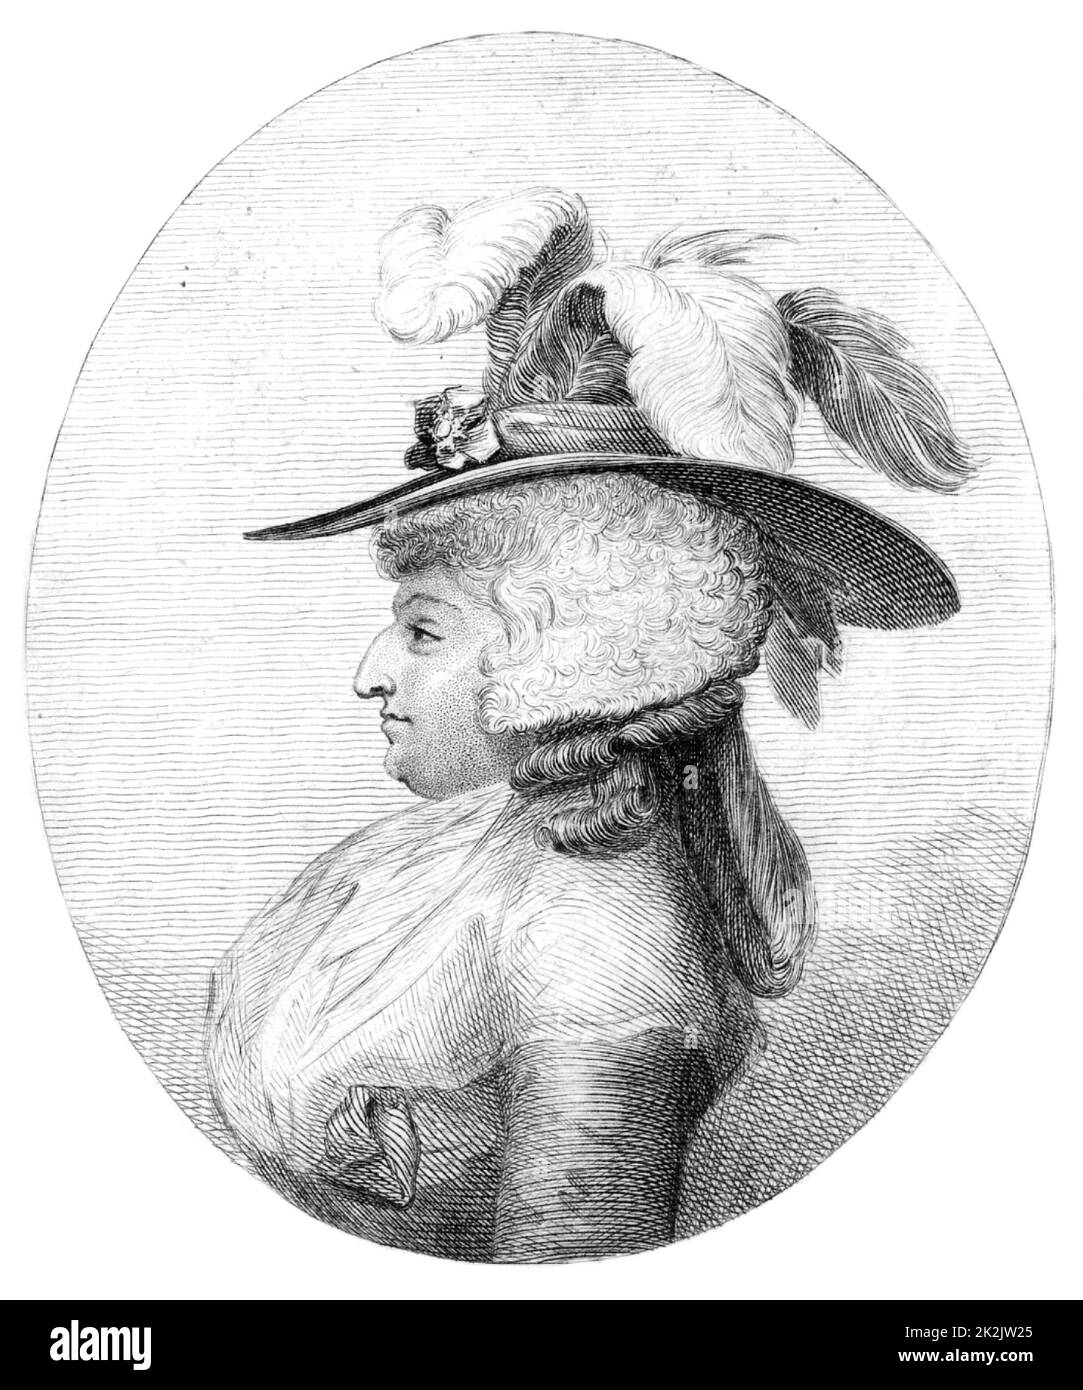 Frau Maria Anne Fitzherbert (geb. Smythe - 1756-1837). Heiratete den Prinzen von Wales, 1785 (später George IV.) und lebte bis 1803 bei ihm. Die Ehe wurde gemäß dem Royal Marriage Act von 1772 für illegal erklärt, da Frau Fitzherbert eine römisch-katholische war und George III. Keine Zustimmung gesucht hatte. Gravur. Stockfoto